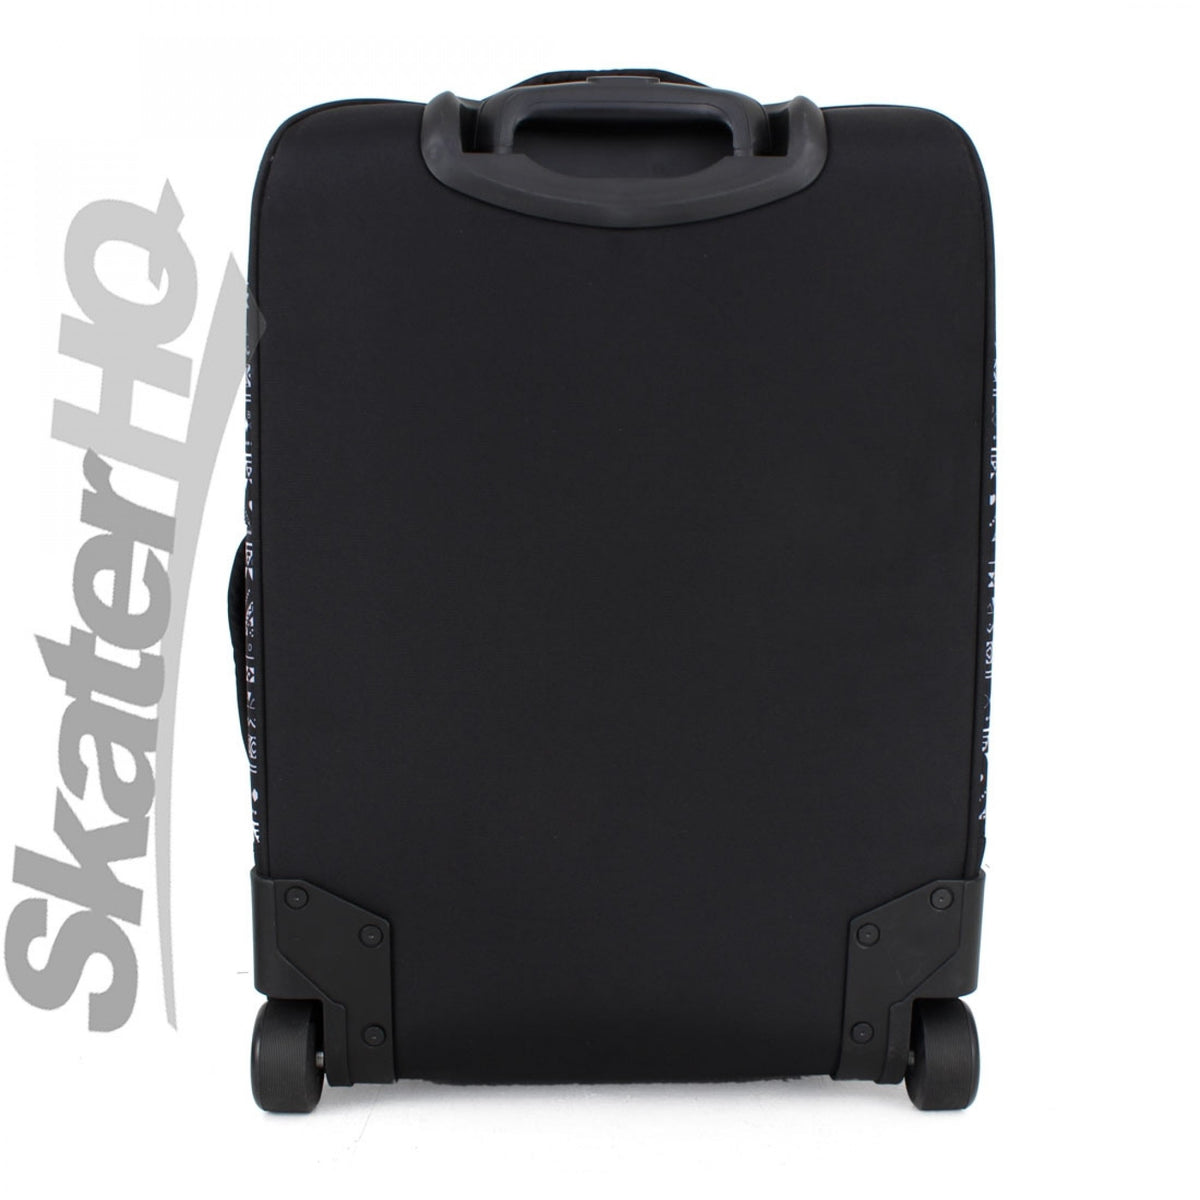 Bont Wheelie Luggage - Black/Pattern Bags and Backpacks